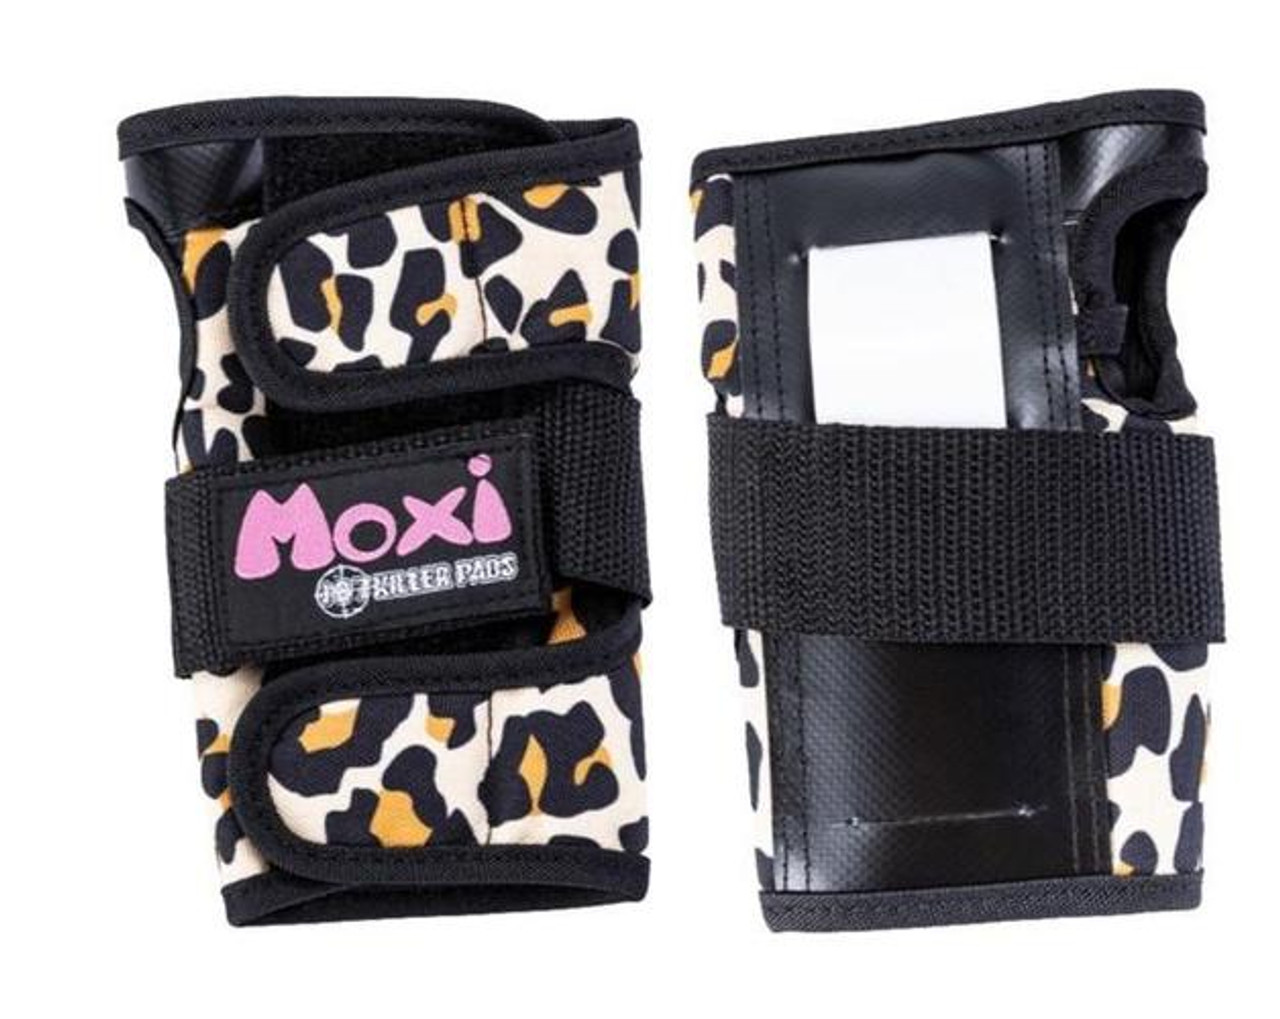 187 Killer Pads Moxi Leopard Wrist Guards MD